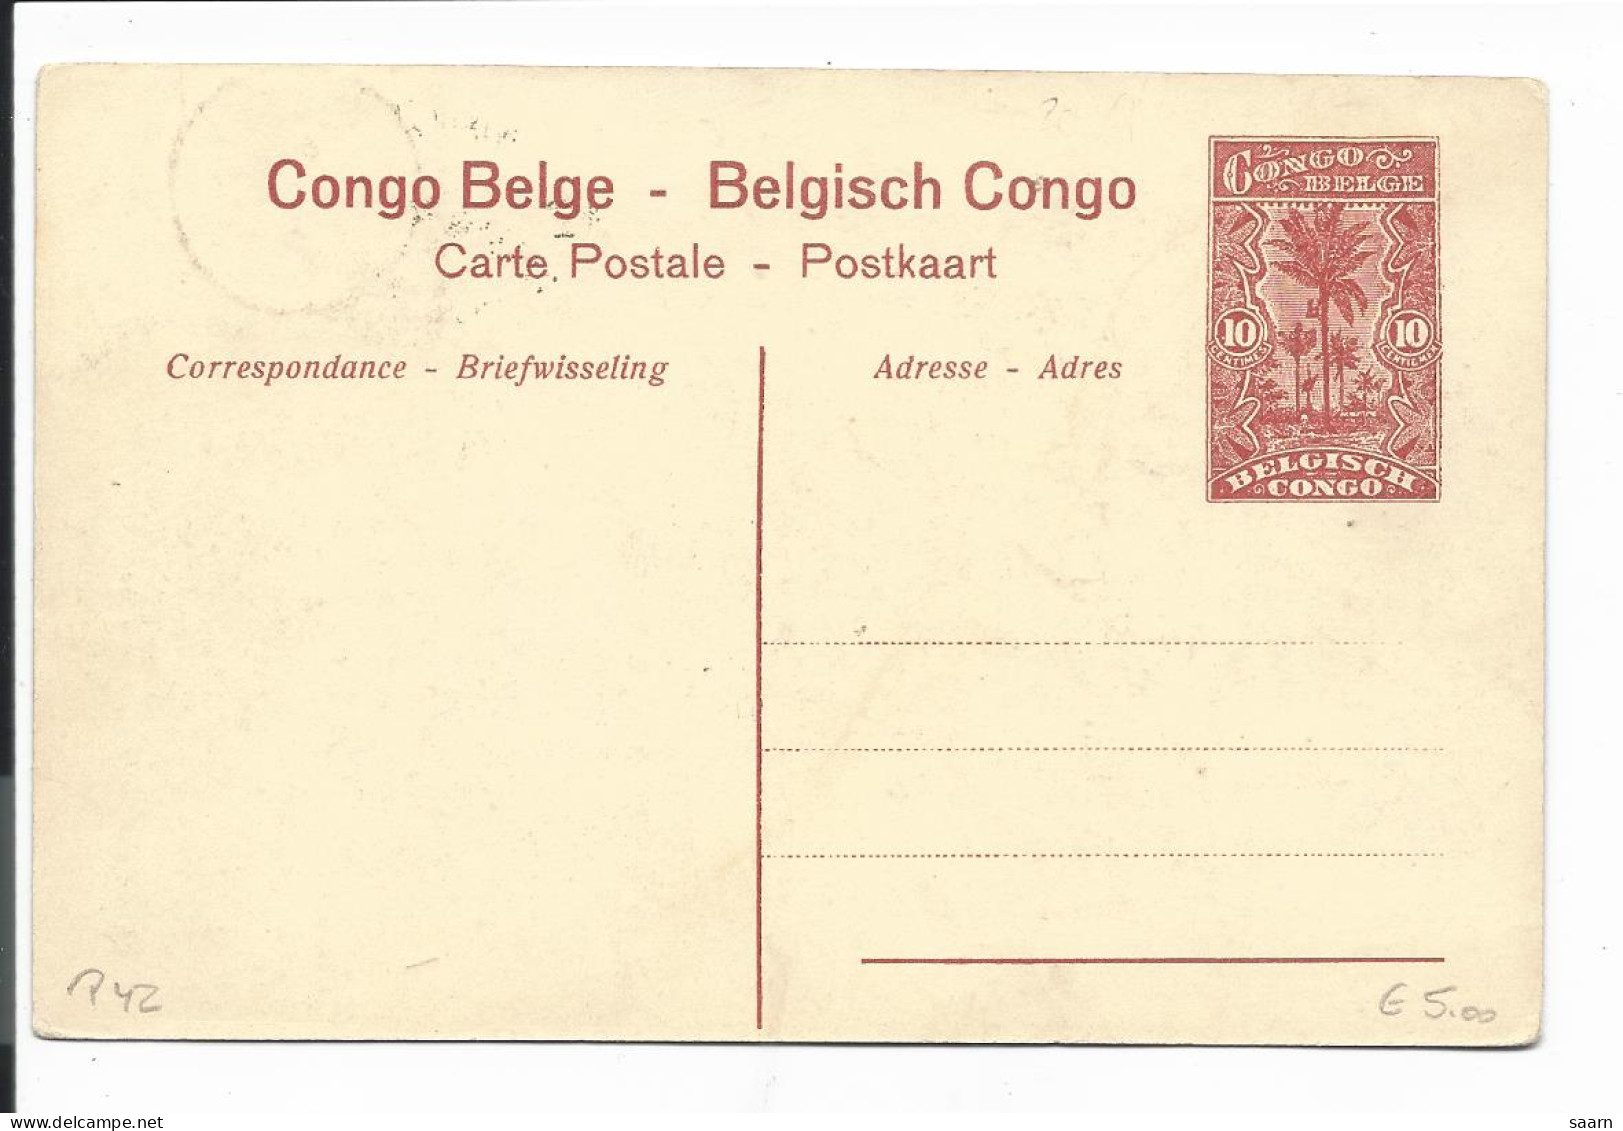 Belgisch-Kongo  P 43-09  ** - 10 Ct. Palmen Bildpostkarte 'Un Coin De Foret Du Mayumbo' - Interi Postali